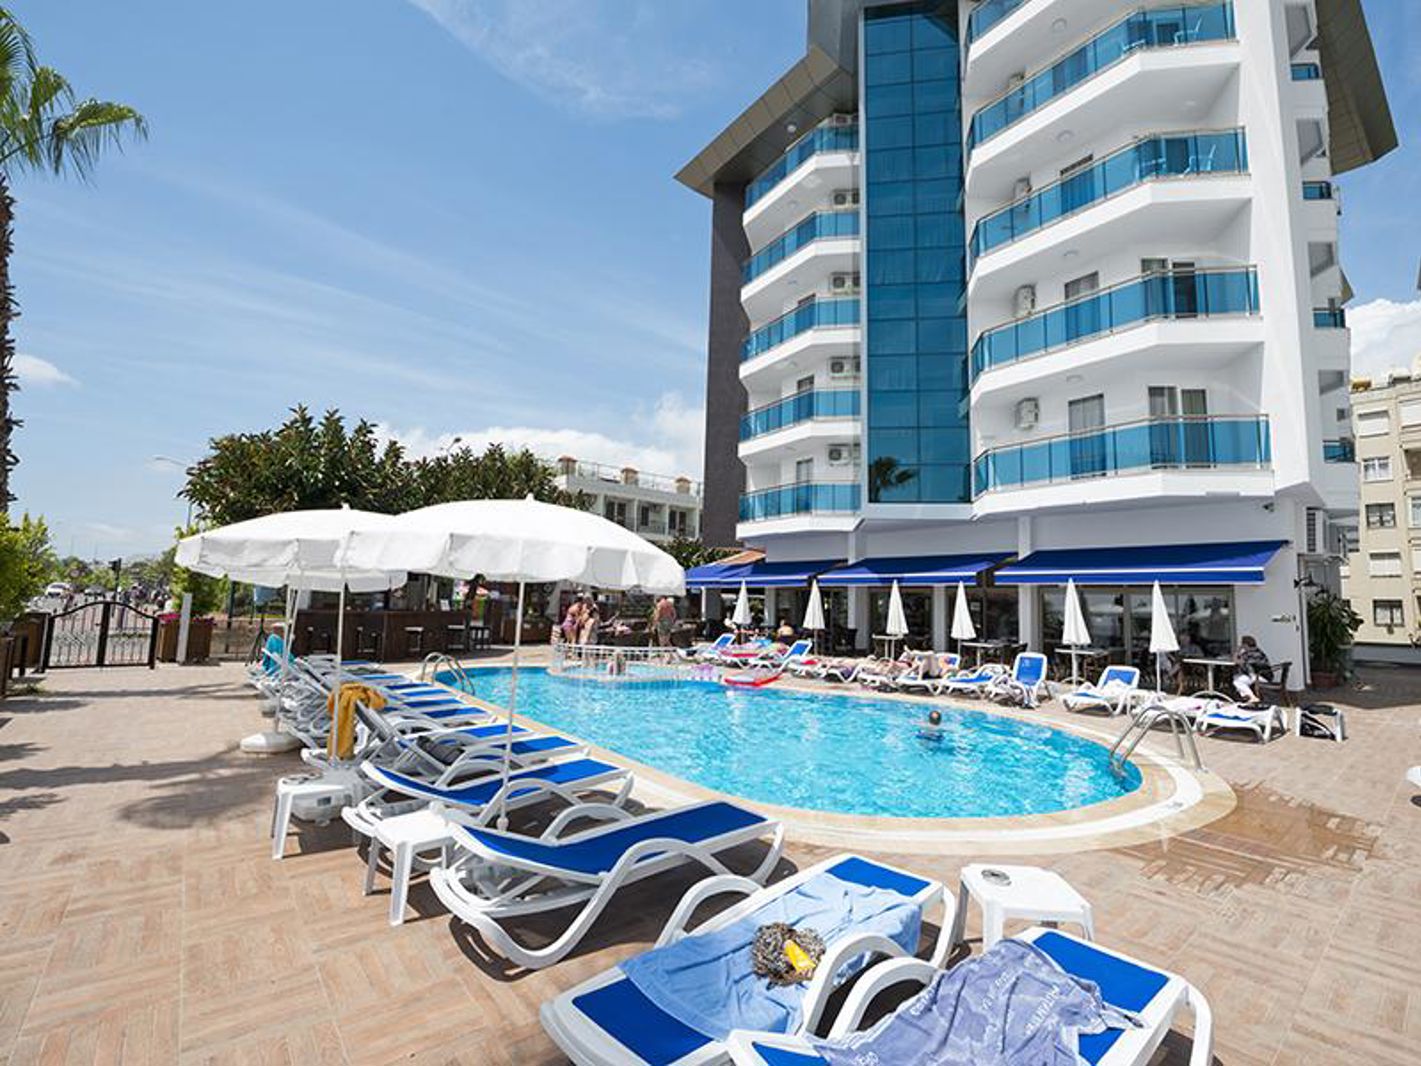 Meer info over Parador Beach Hotel  bij Corendon